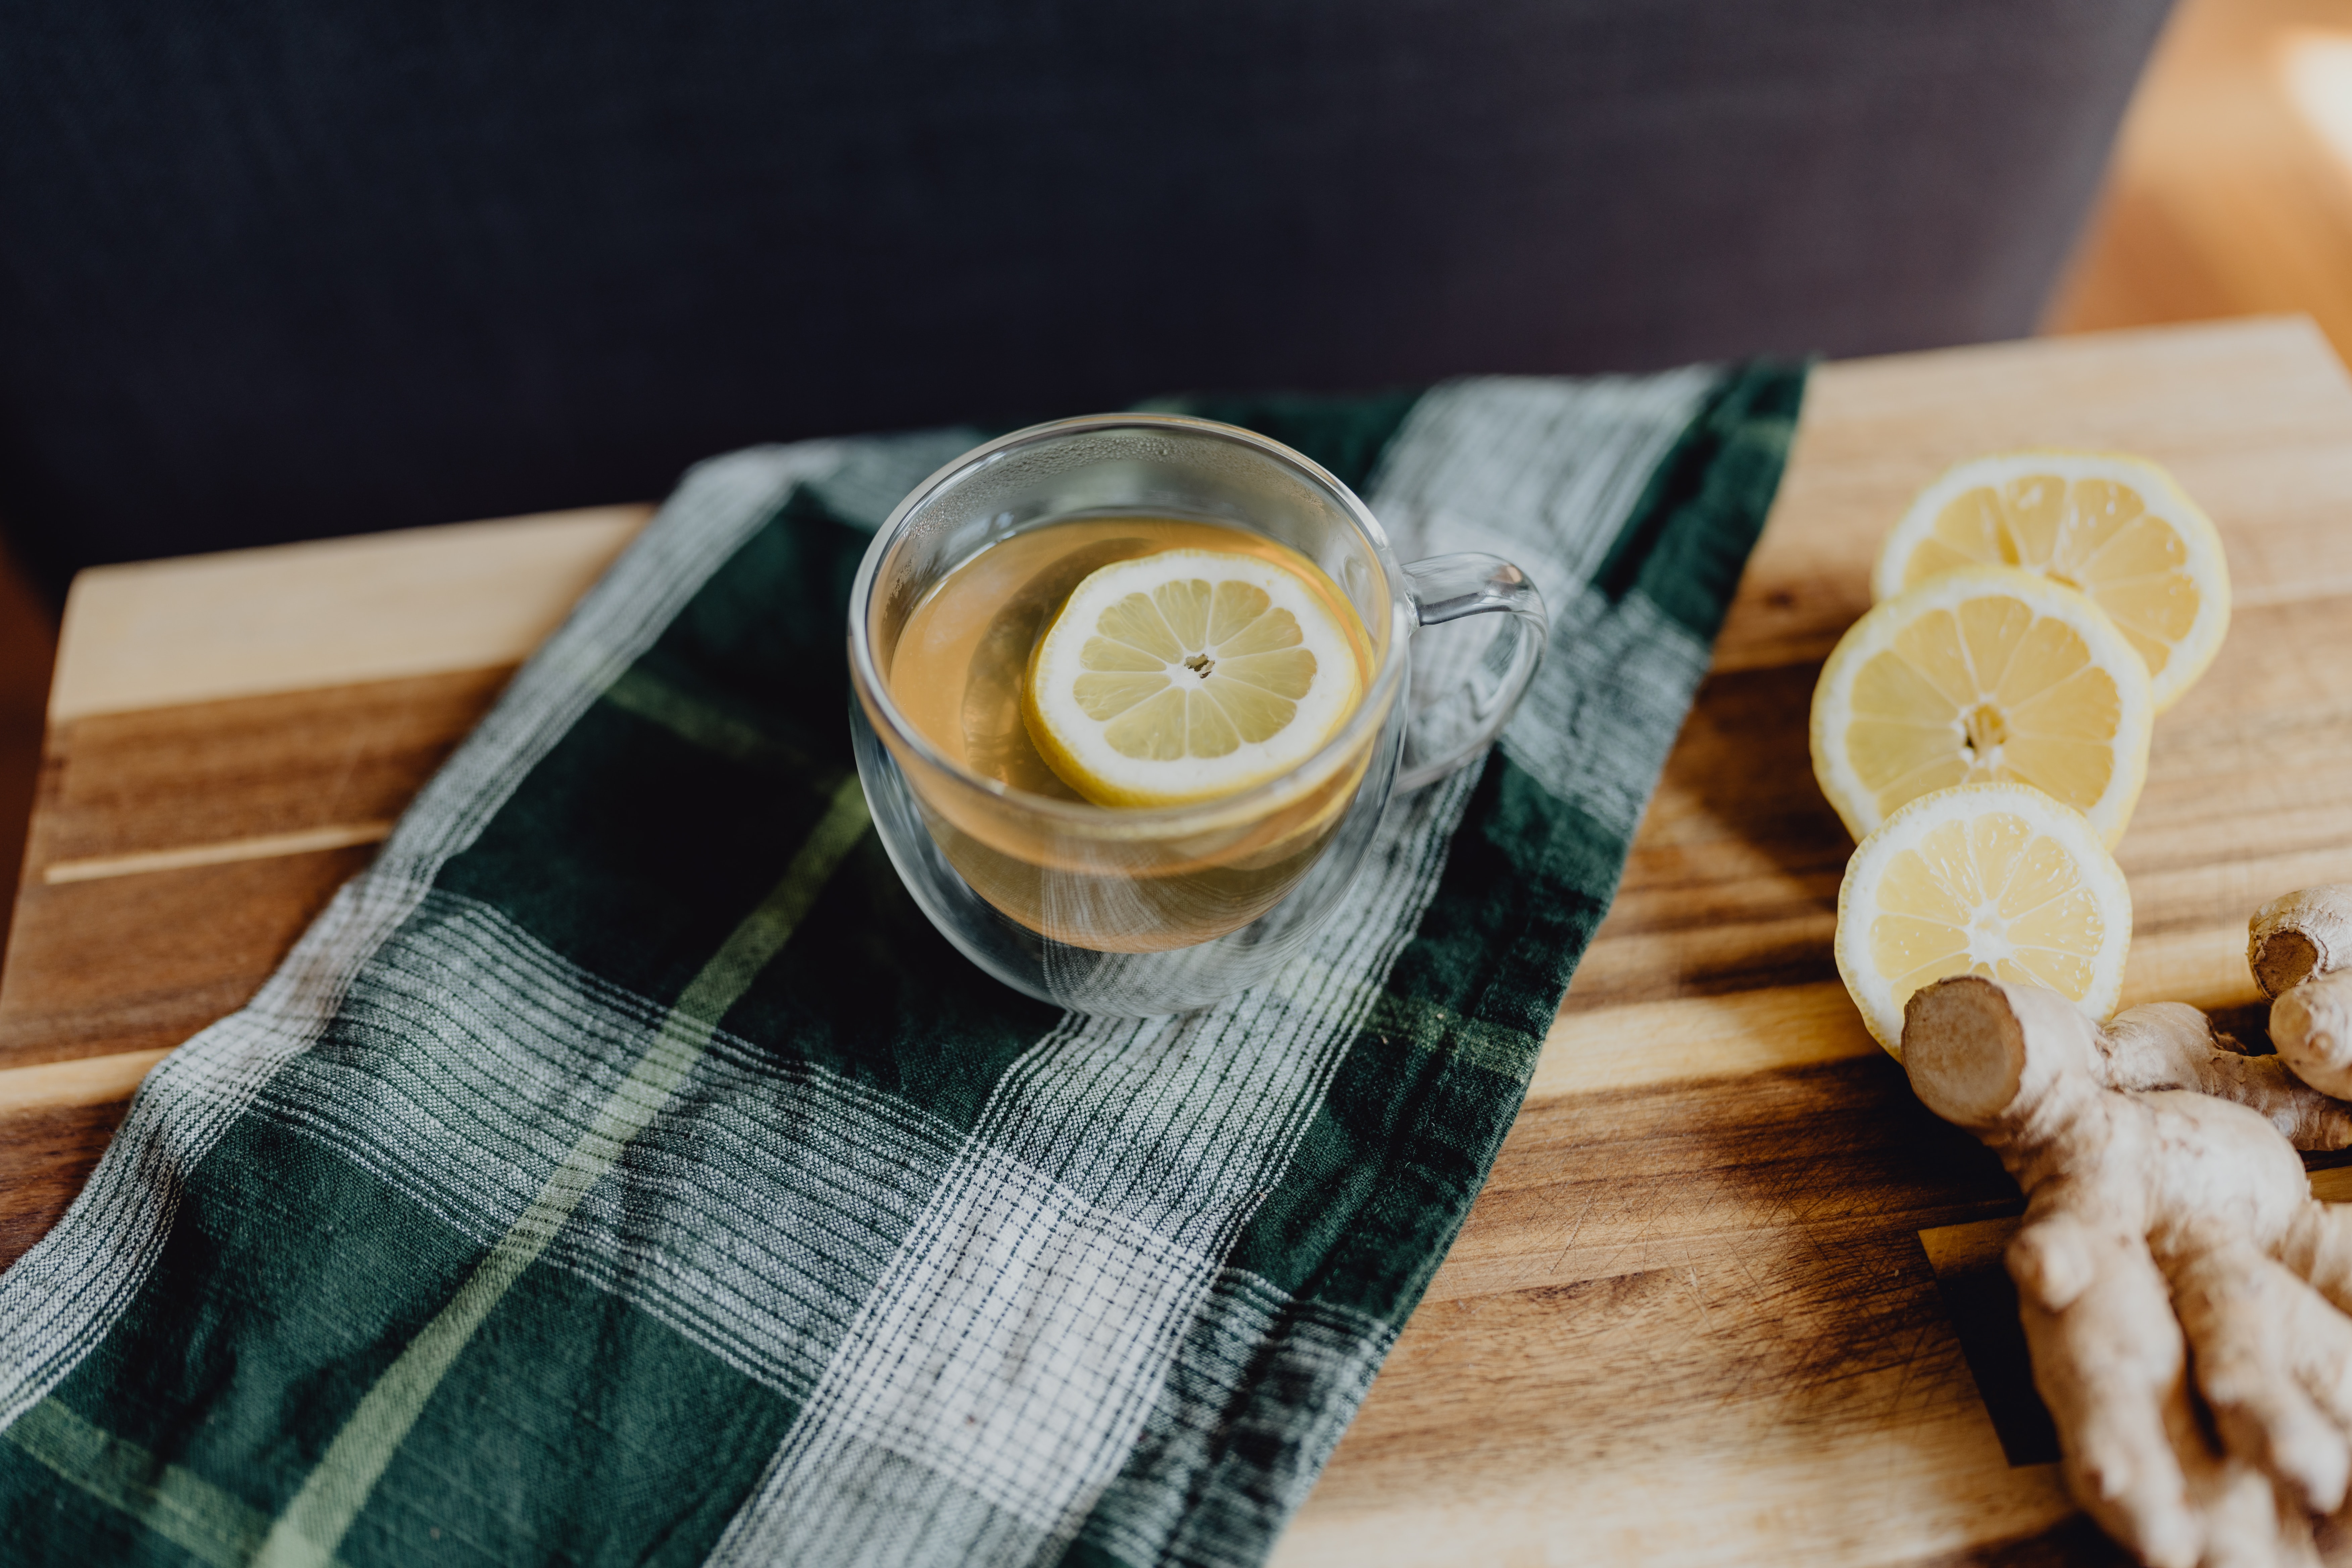 Lemon Ginger Tea by Kelly Sikkema on Unsplash